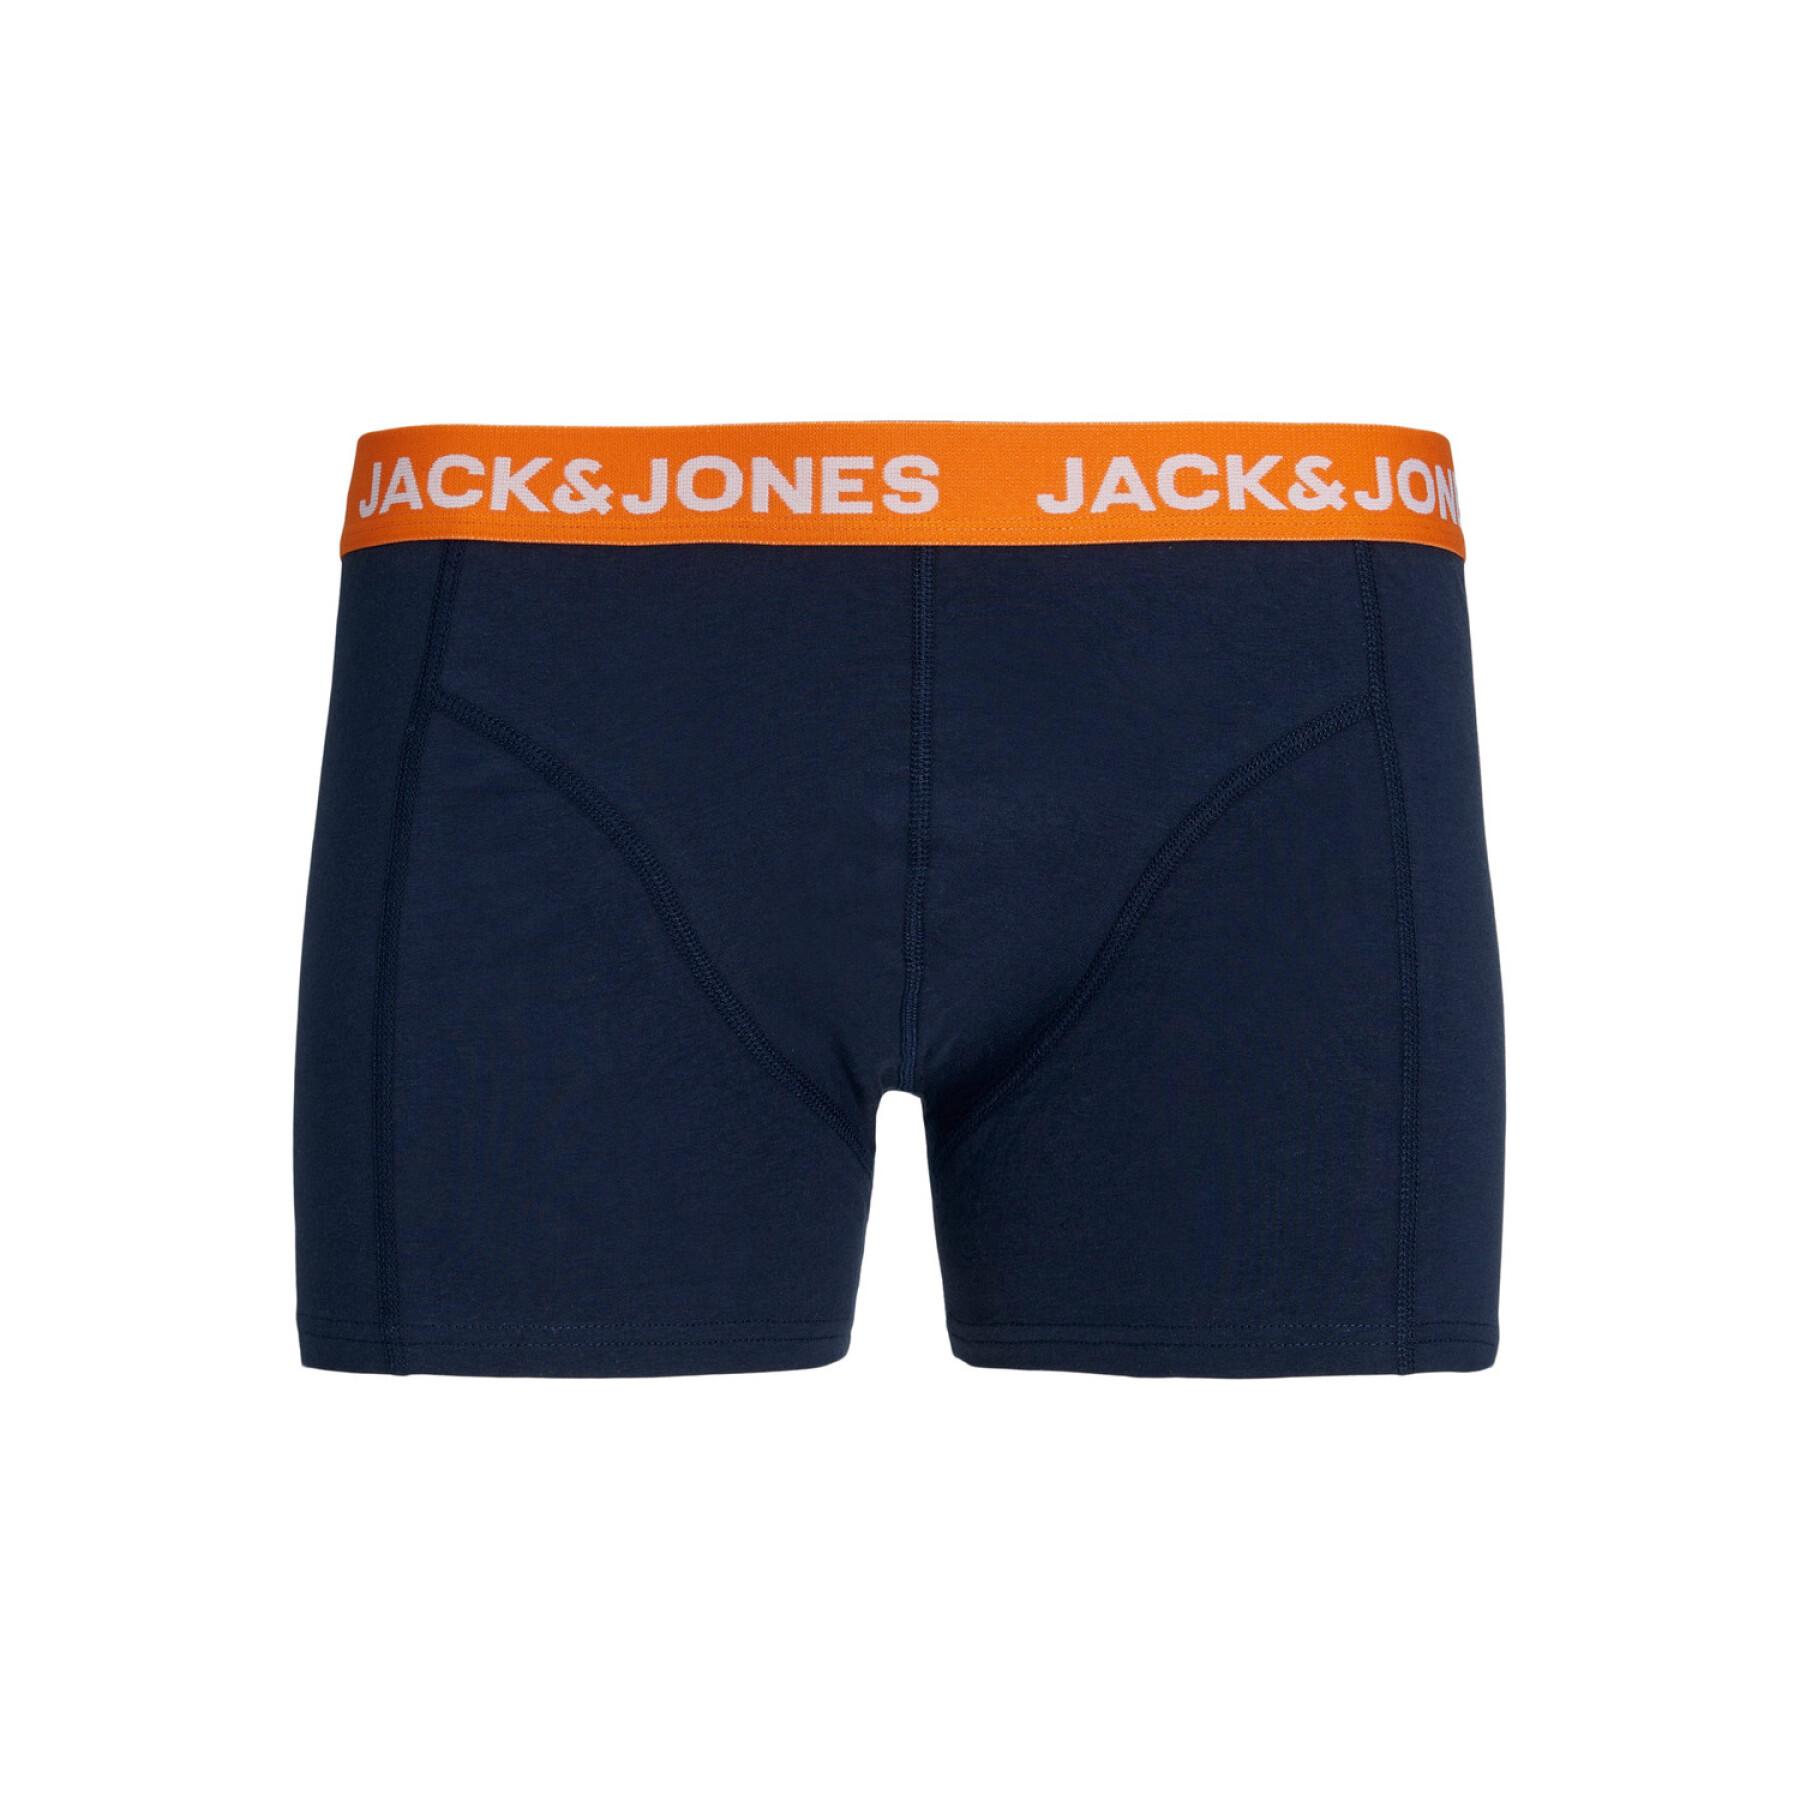 Boxer Jack & Jones Norman Contrast